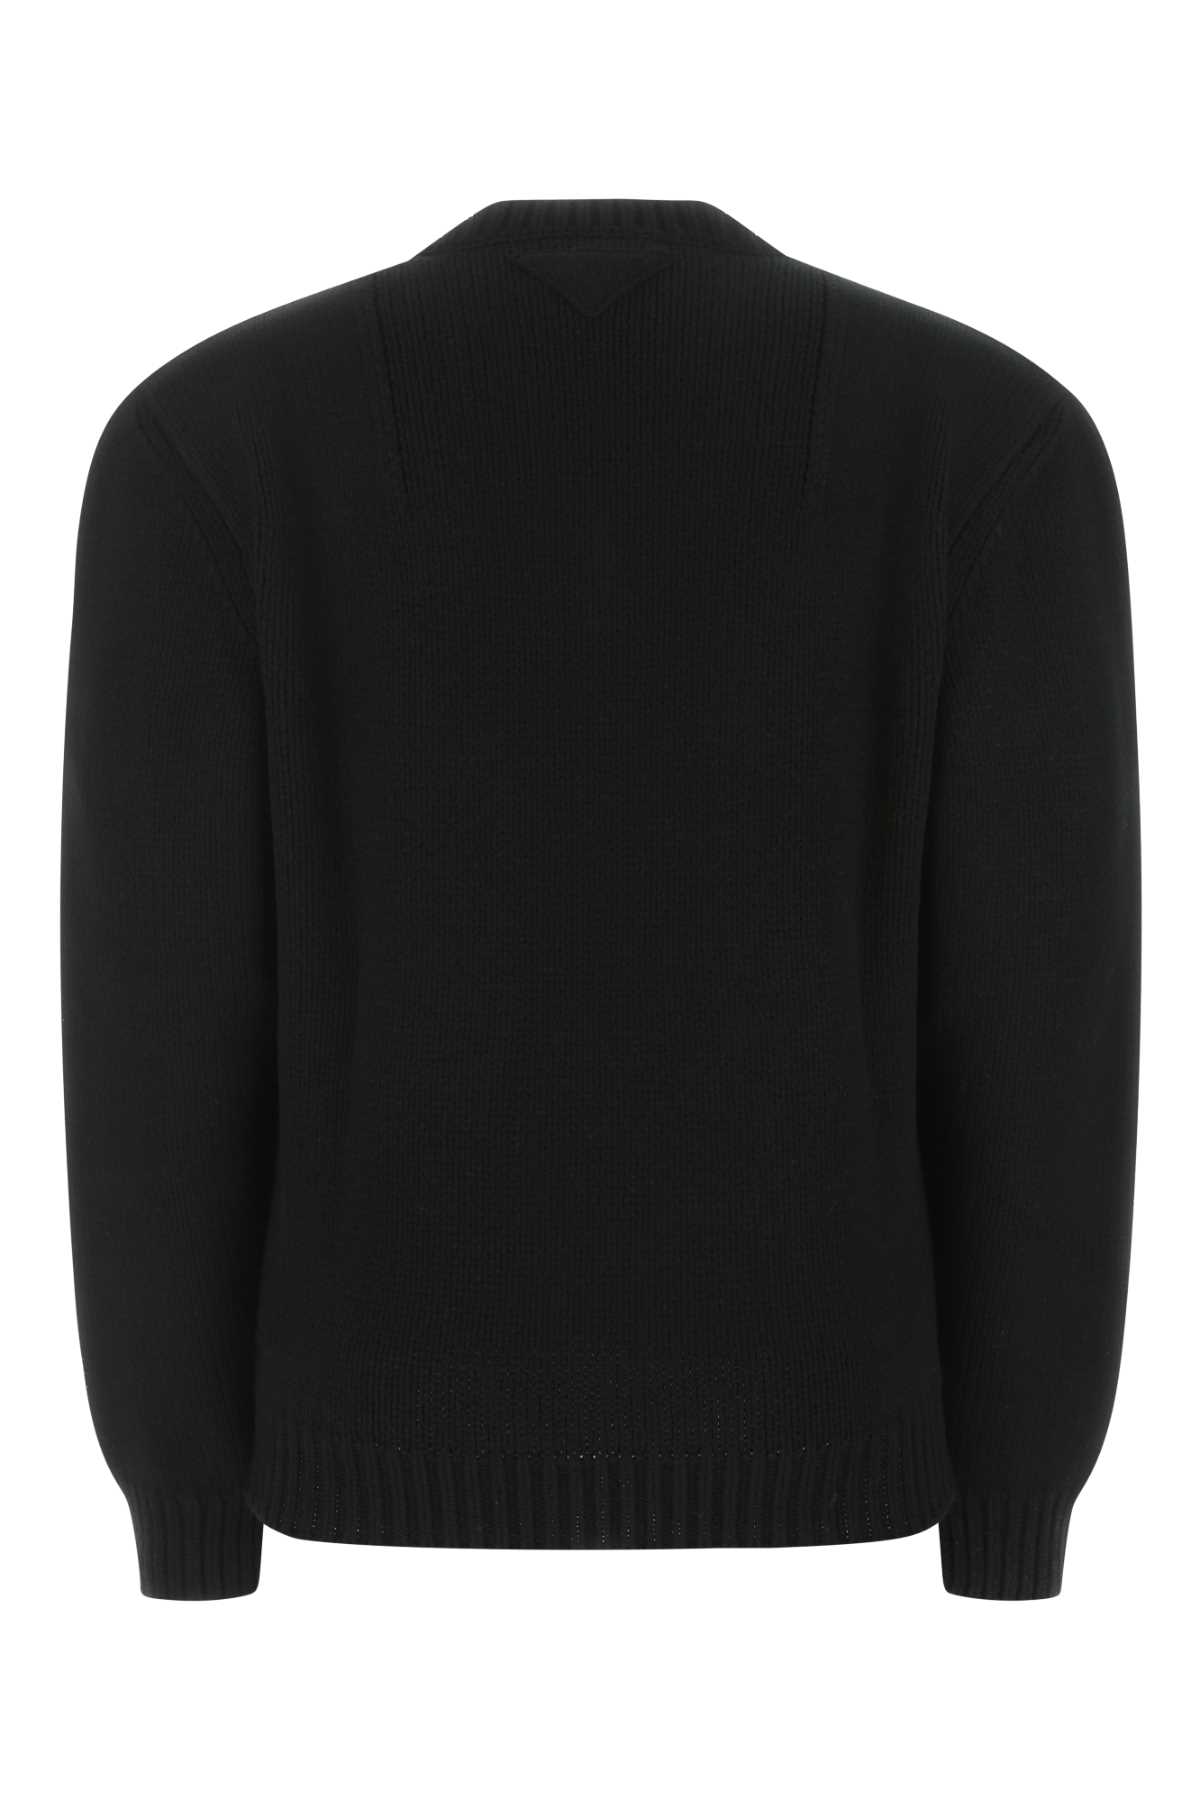 Prada Black Wool Sweater In F0002